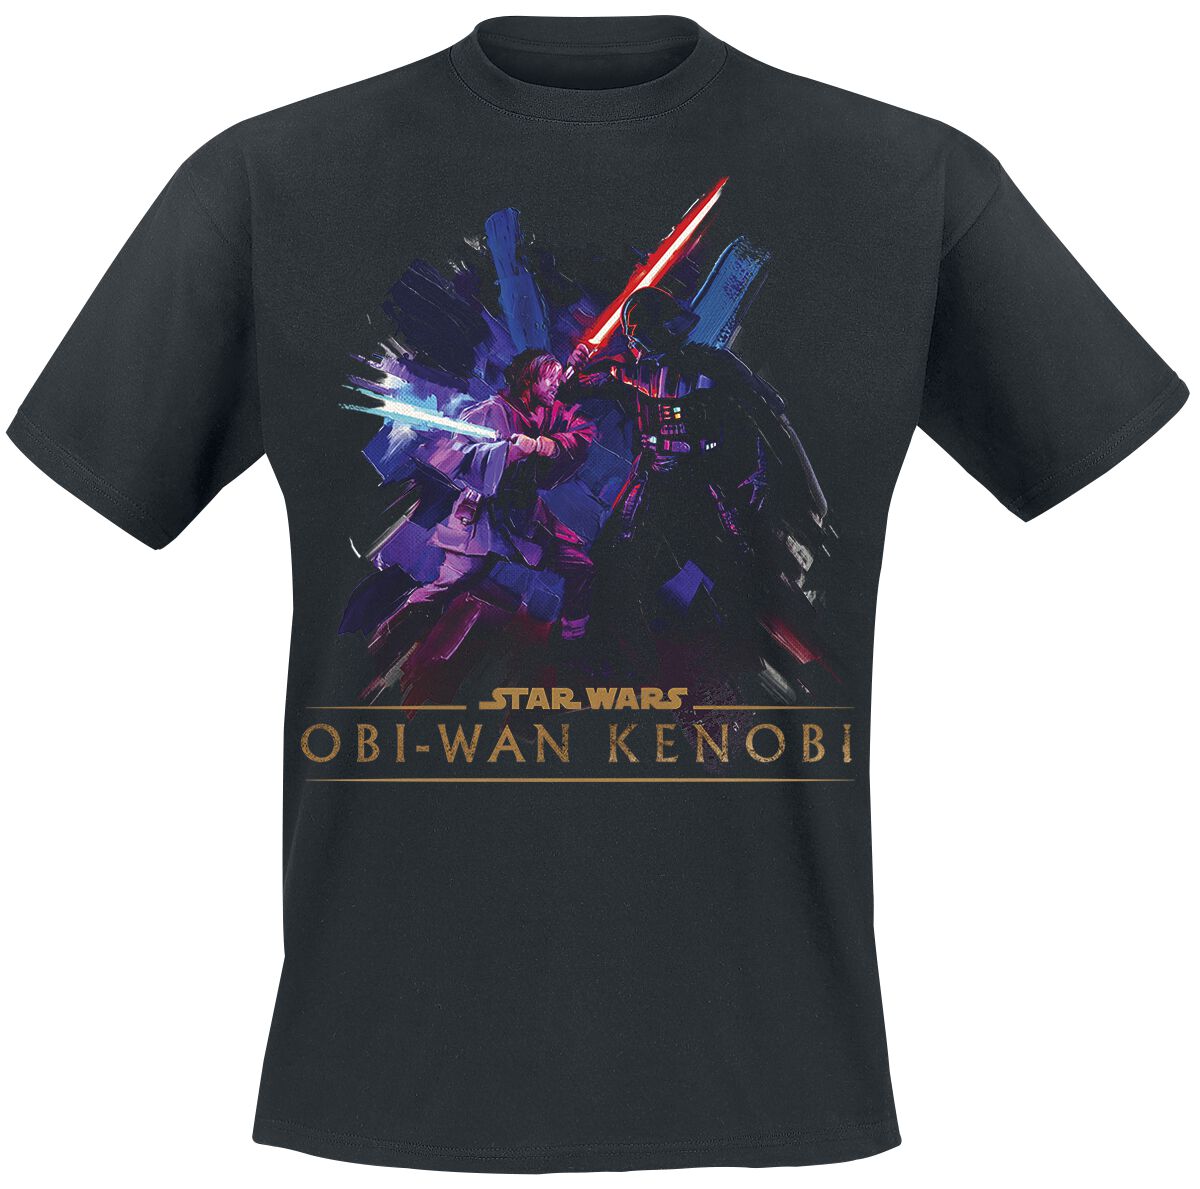 Star Wars T-Shirt - Obi-Wan Kenobi - Vintage - S bis XXL - für Männer - Größe S - schwarz  - EMP exklusives Merchandise!